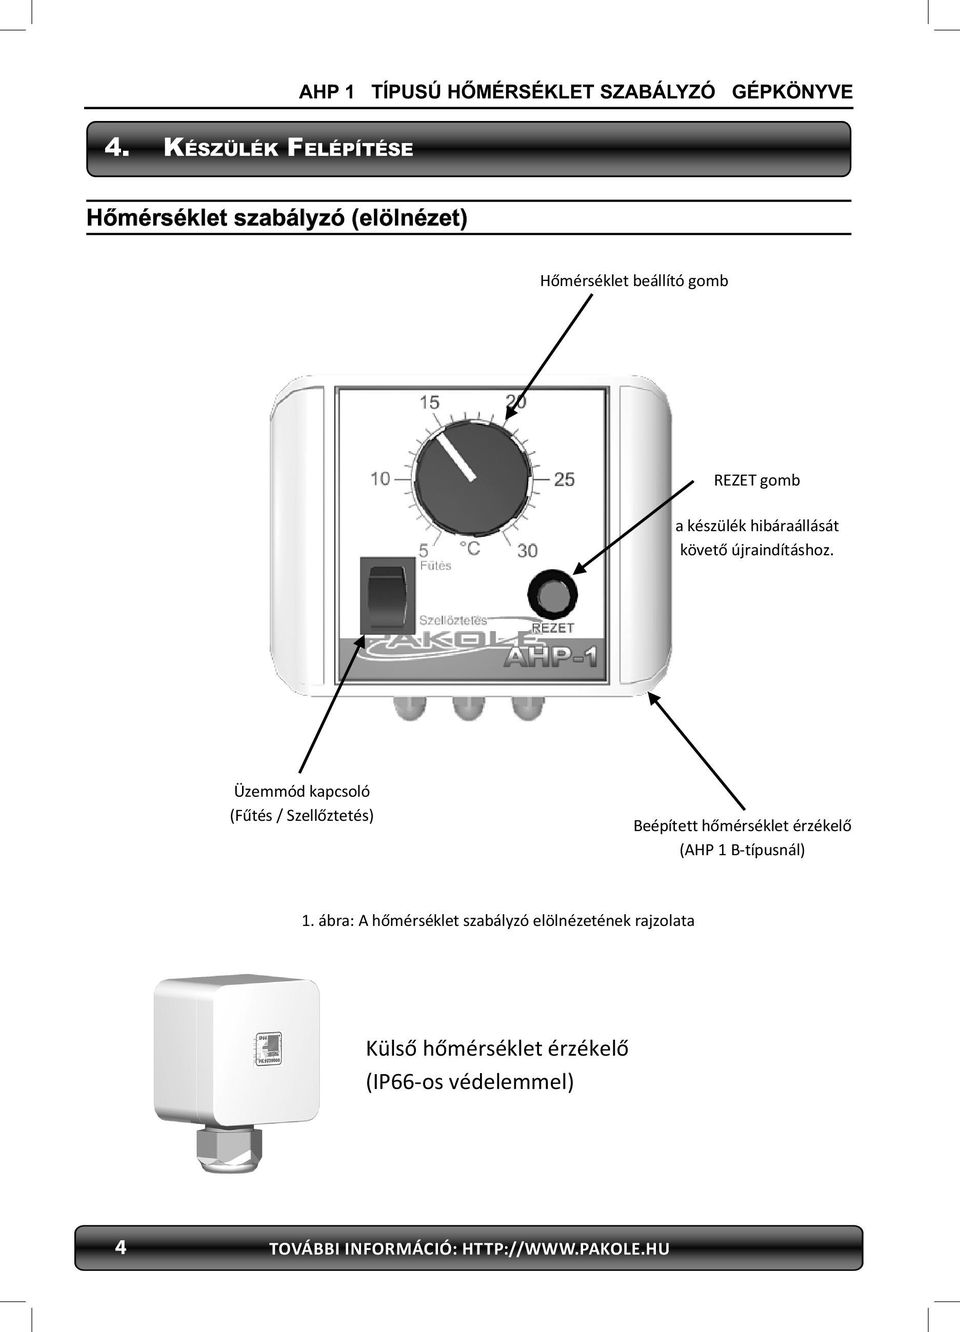 Üzemmód kapcsoló (Fűtés / Szellőztetés) Beépített hőmérséklet érzékelő (AHP 1